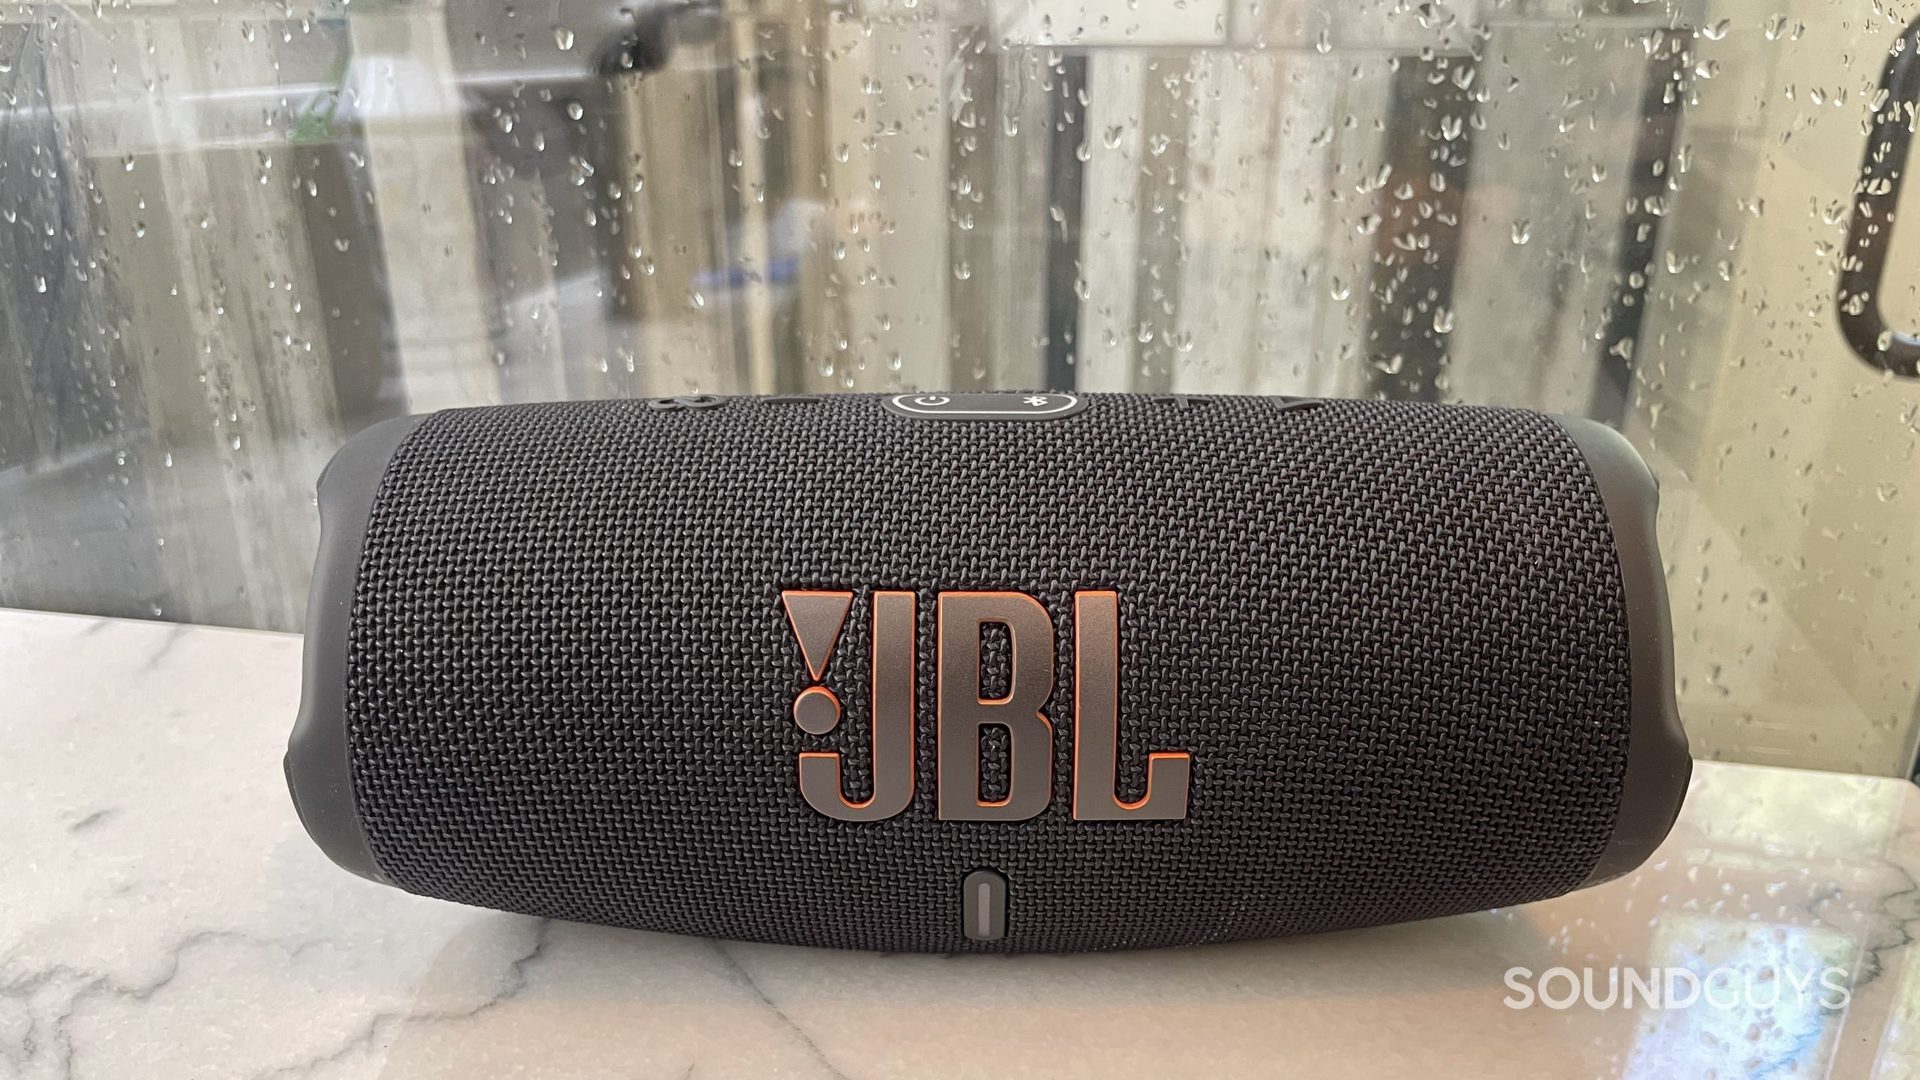 L'enceinte Bluetooth JBL Charge 5 repose sur un comptoir avec des gouttes de pluie sur une fenêtre derrière elle.